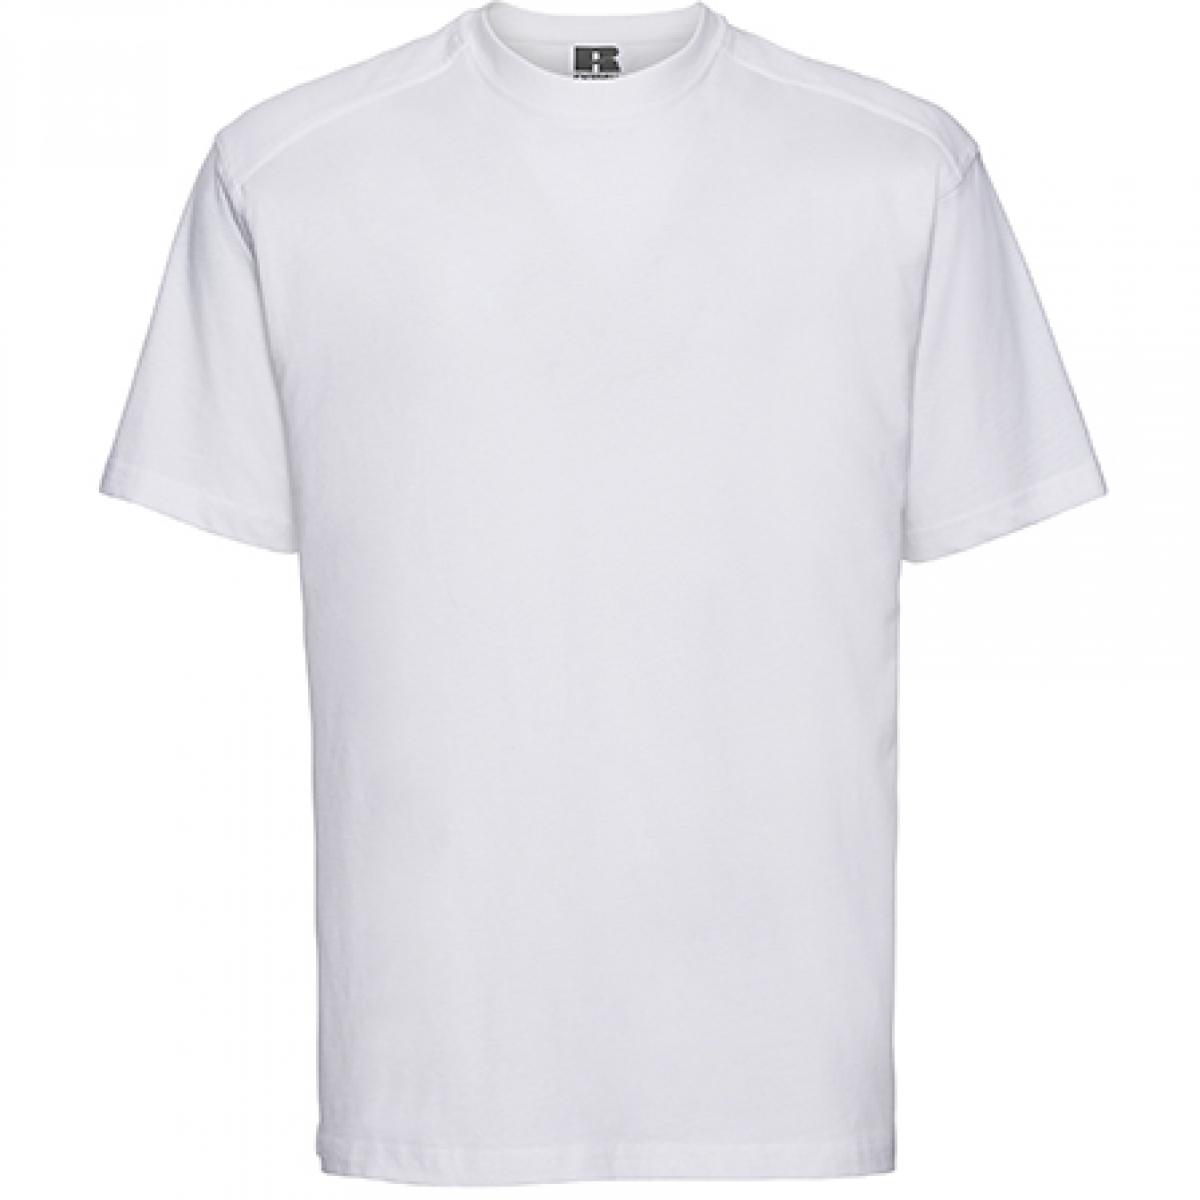 Hersteller: Russell Herstellernummer: R-010M-0 Artikelbezeichnung: Workwear Herren T-Shirt - Waschbar bis 60 °C -  bis 4XL Farbe: White